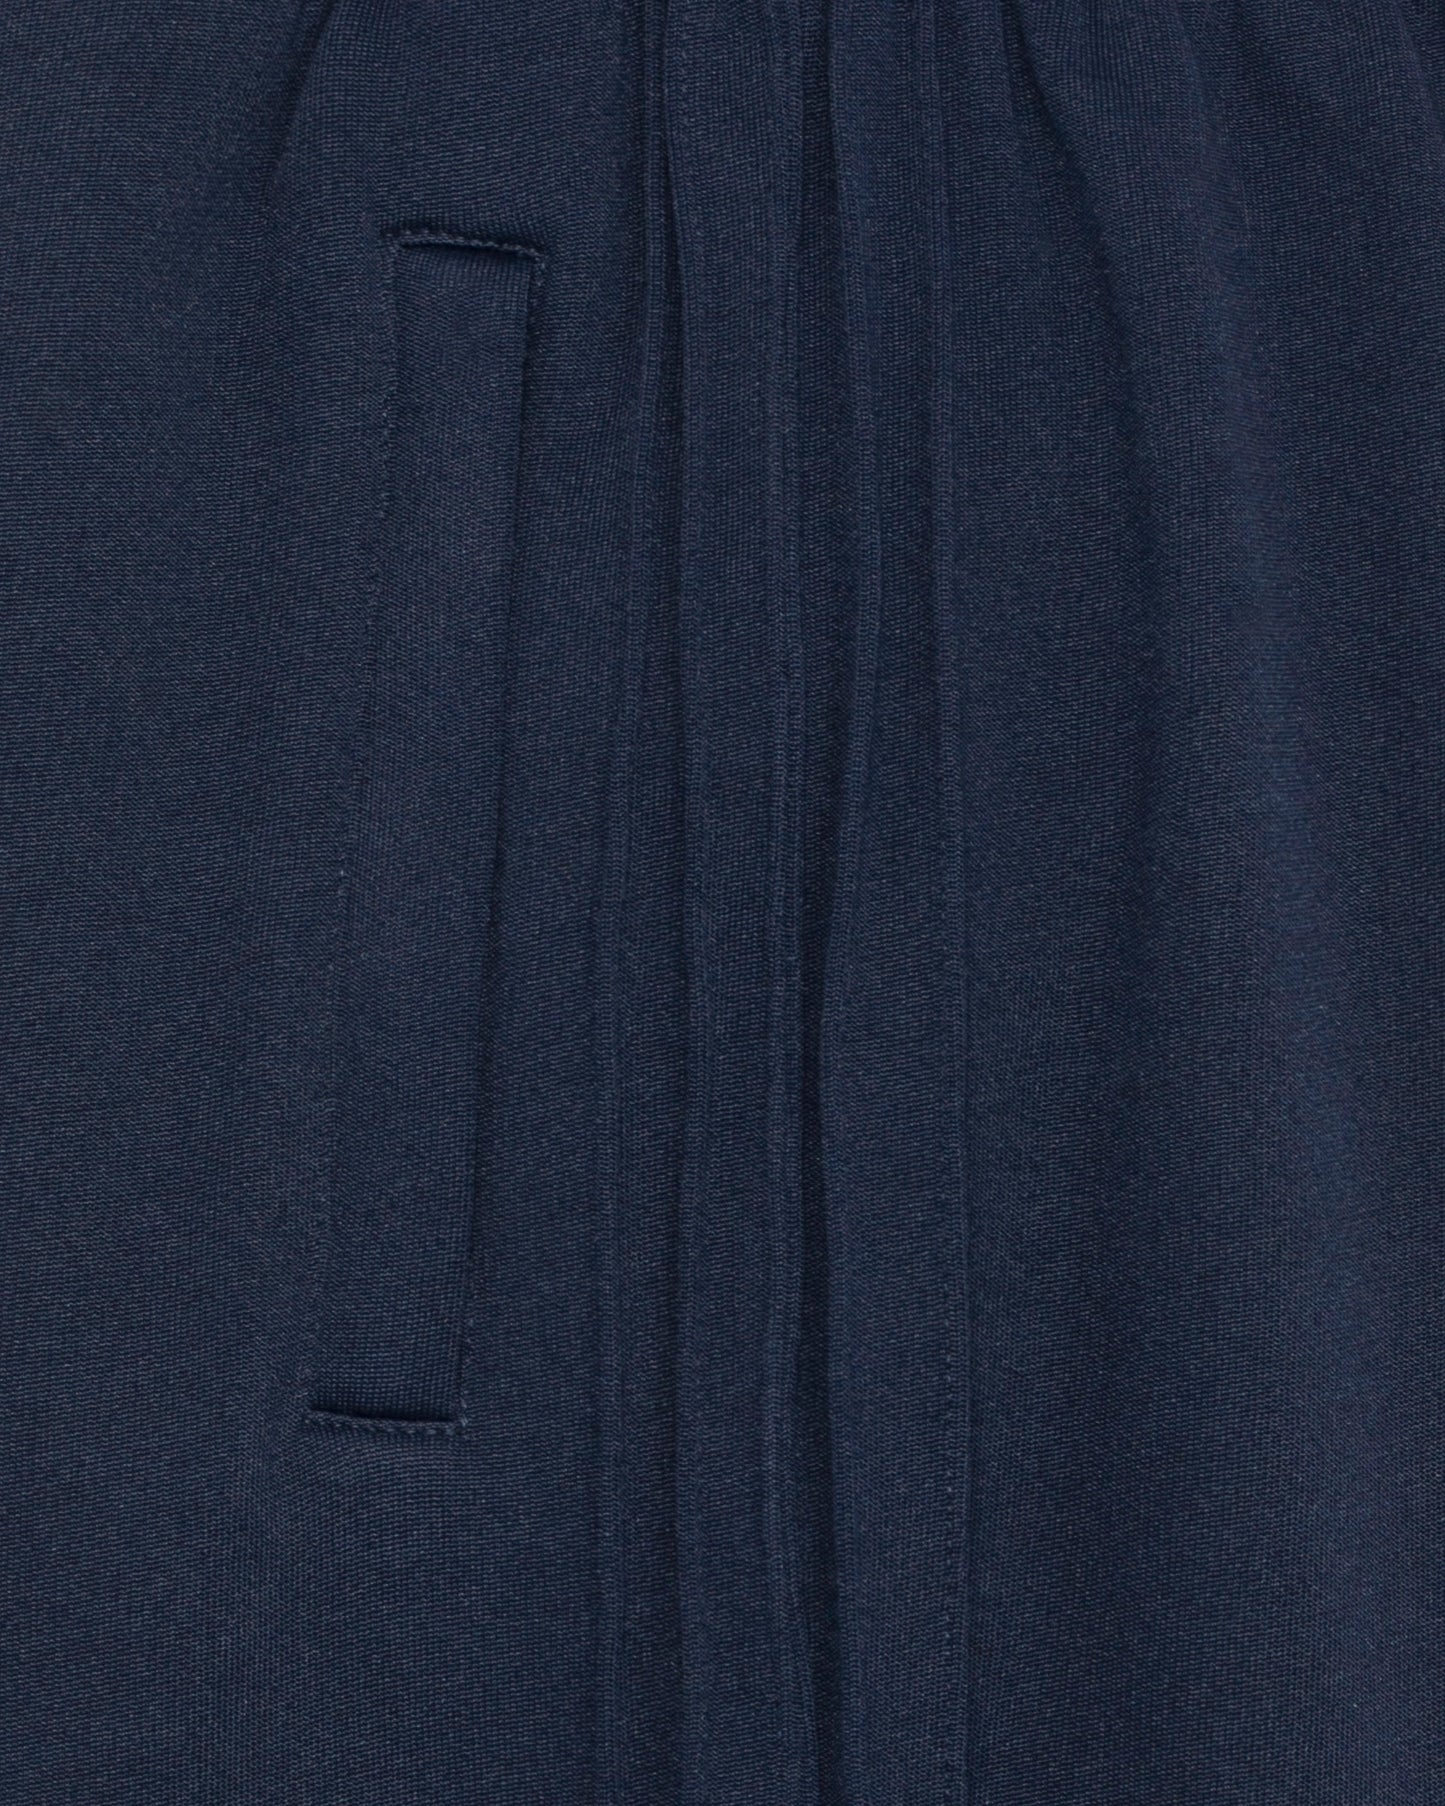 Pantalon de luxe pour homme Erevan, coupe droite, ceinture élastique, cinq nervures côtés, en jersey de coton et polyester, fabriquée en france